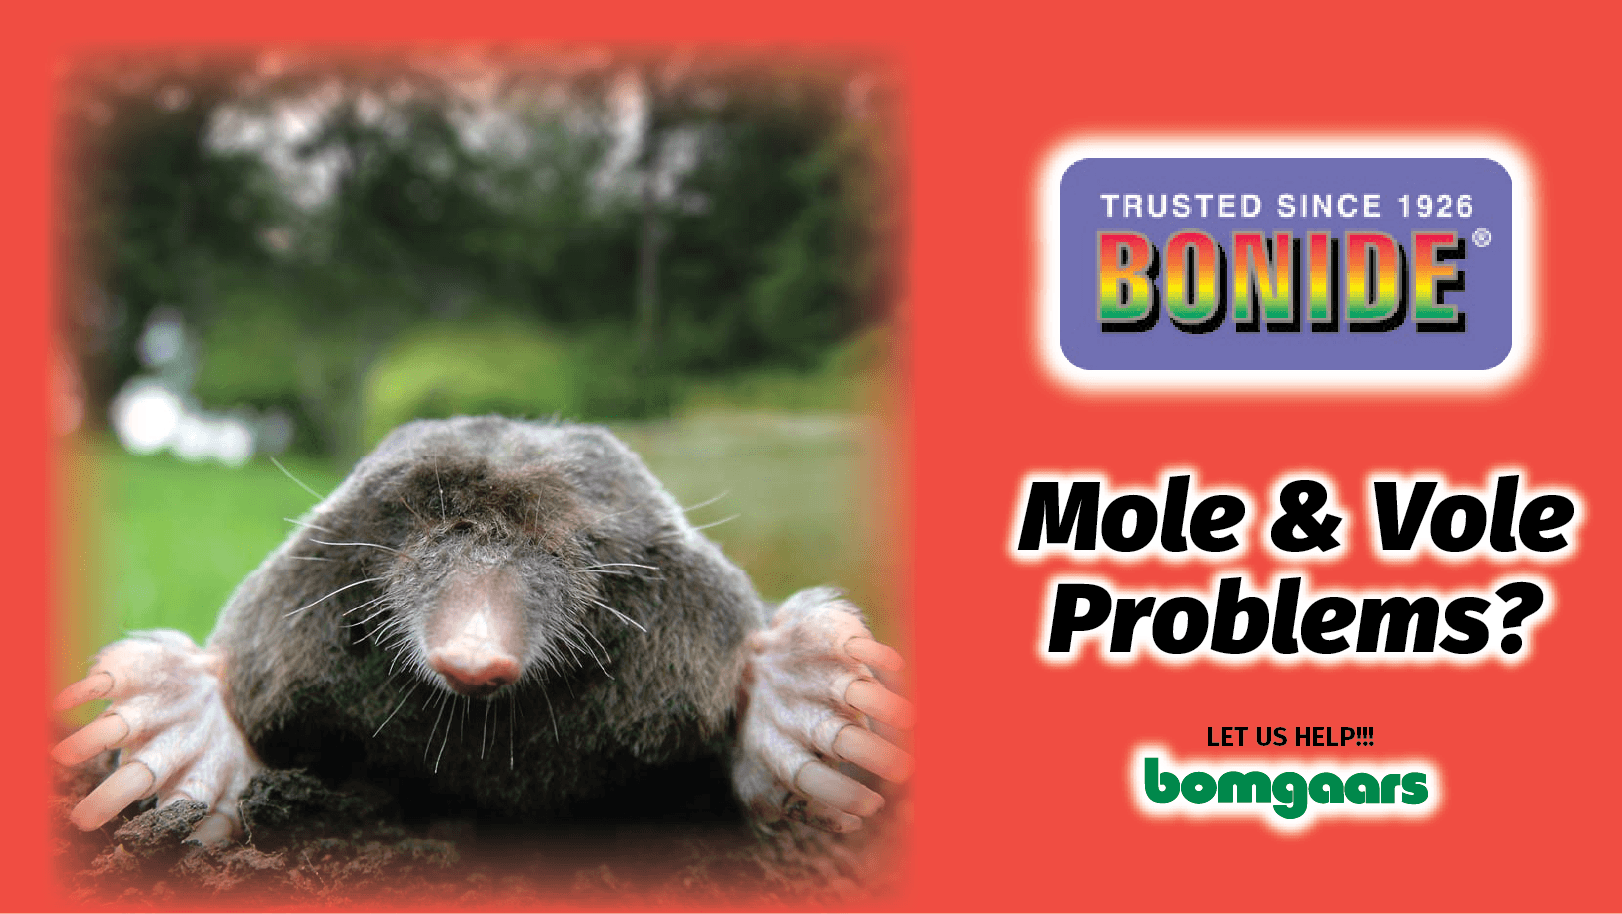 BONIDE: Mole & Vole Problems?